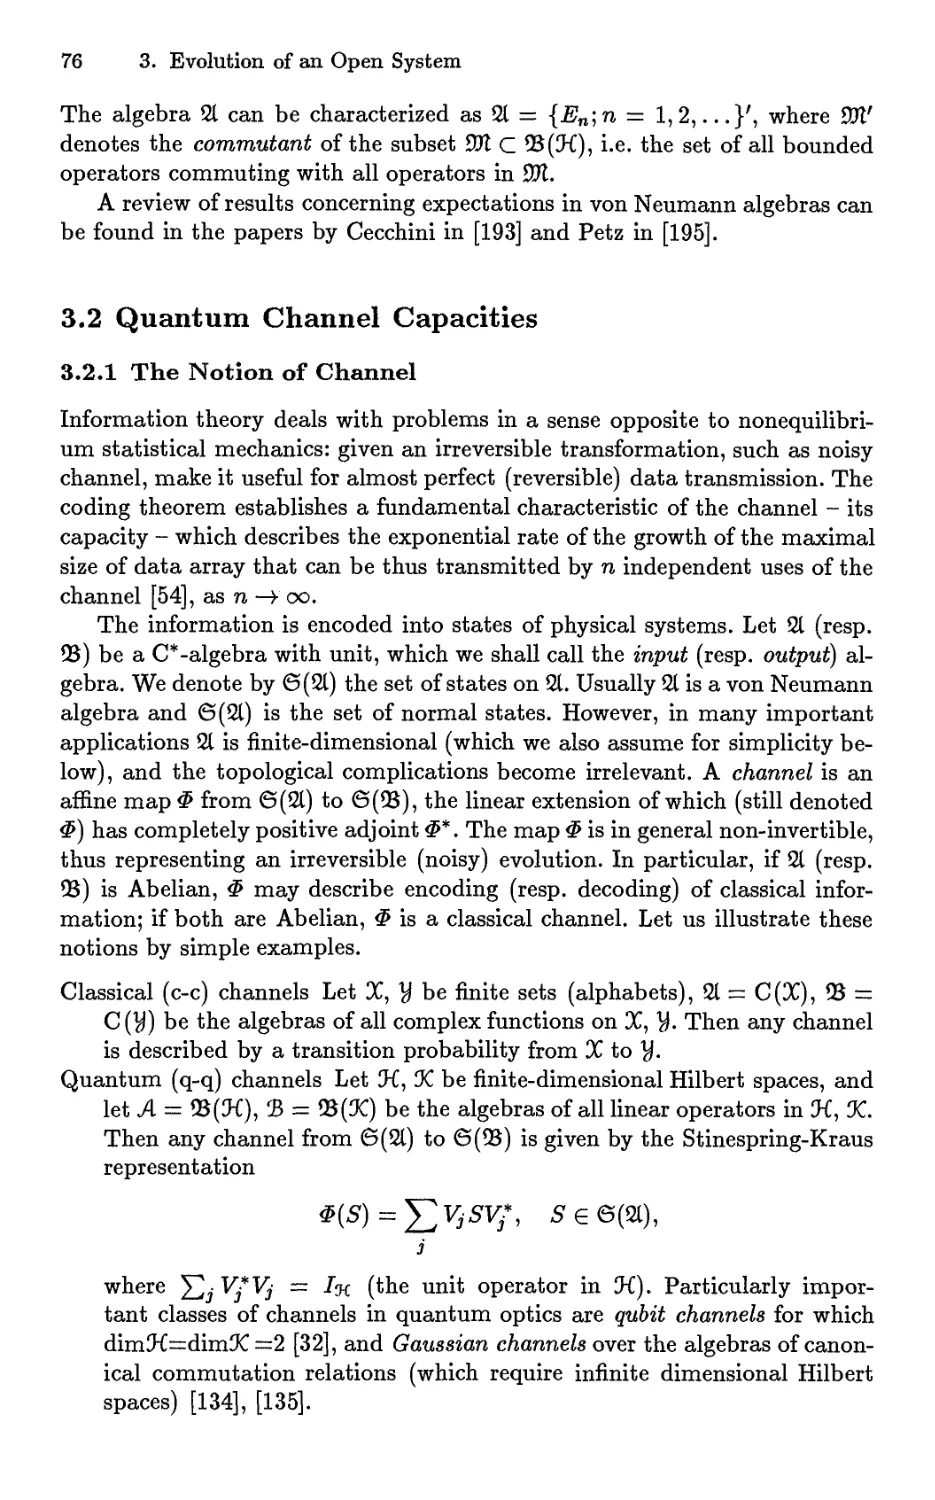 3.2 Quantum Channel Capacities